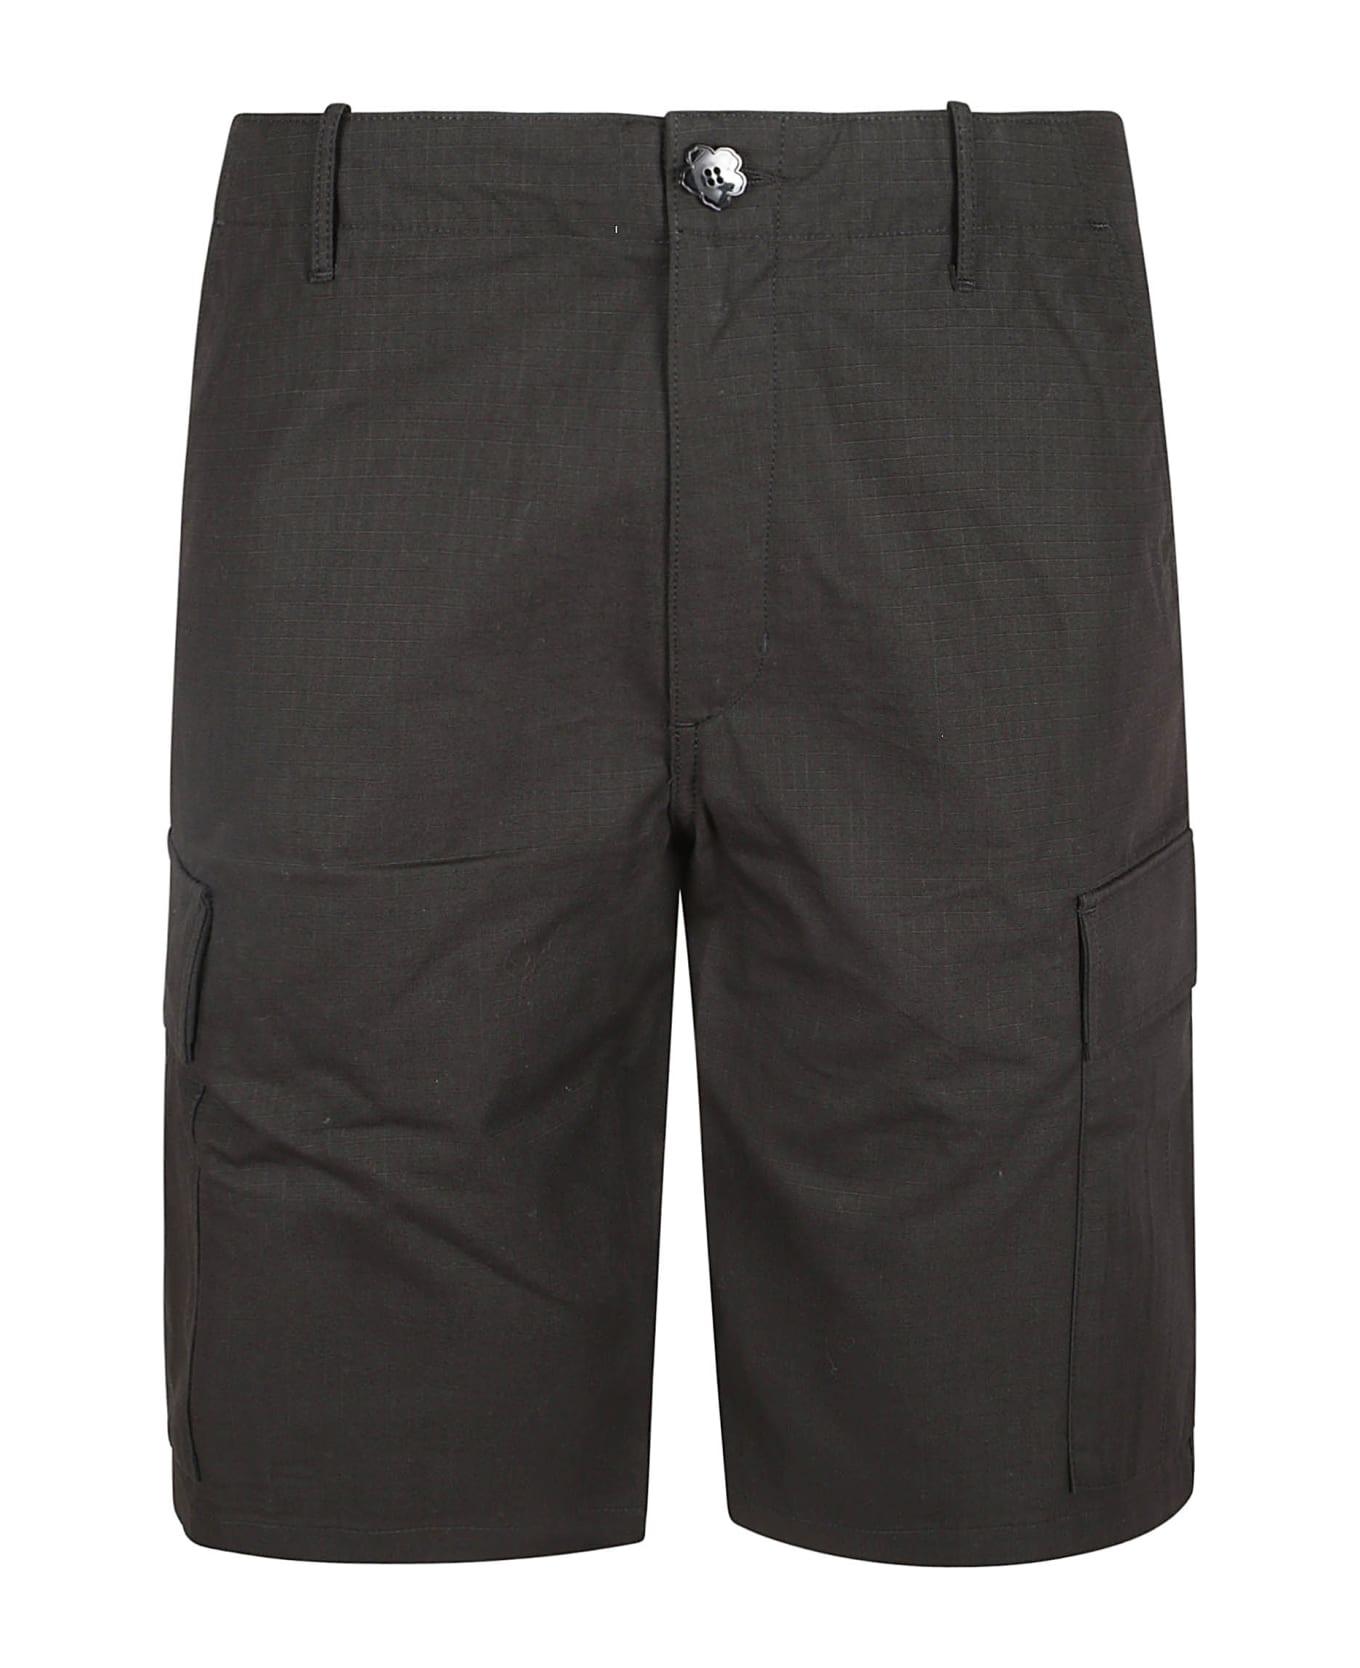 Kenzo Workwear Shorts - Black